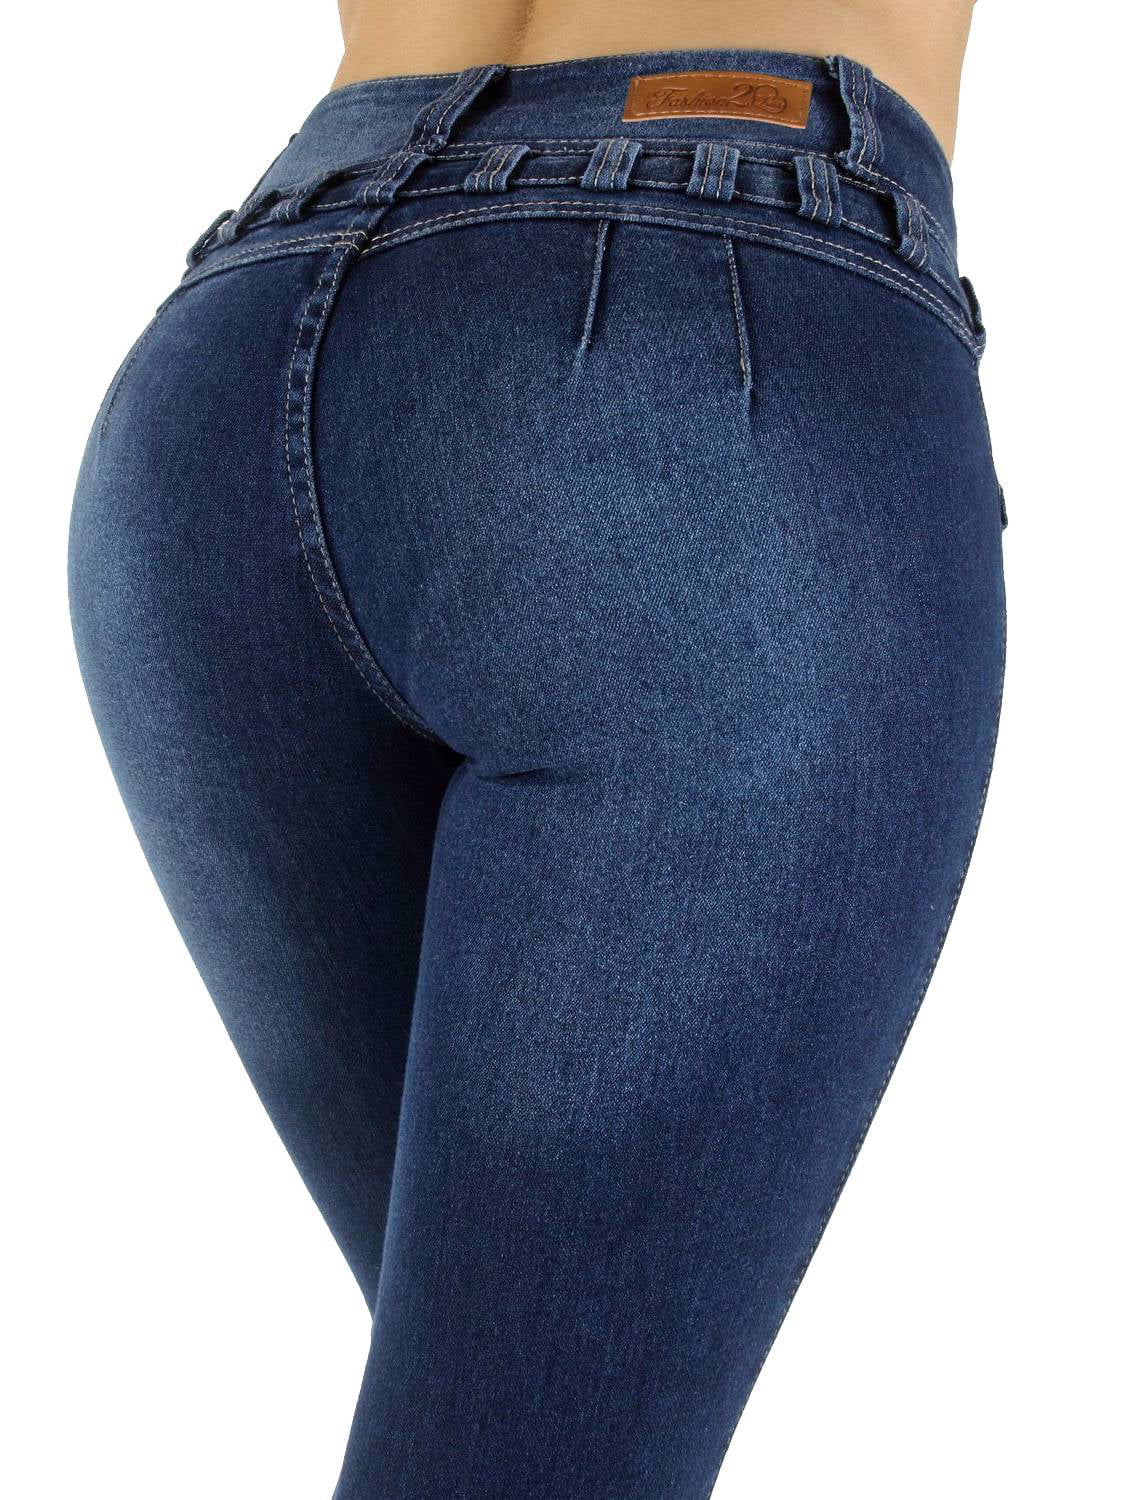 butt enhancing jeans